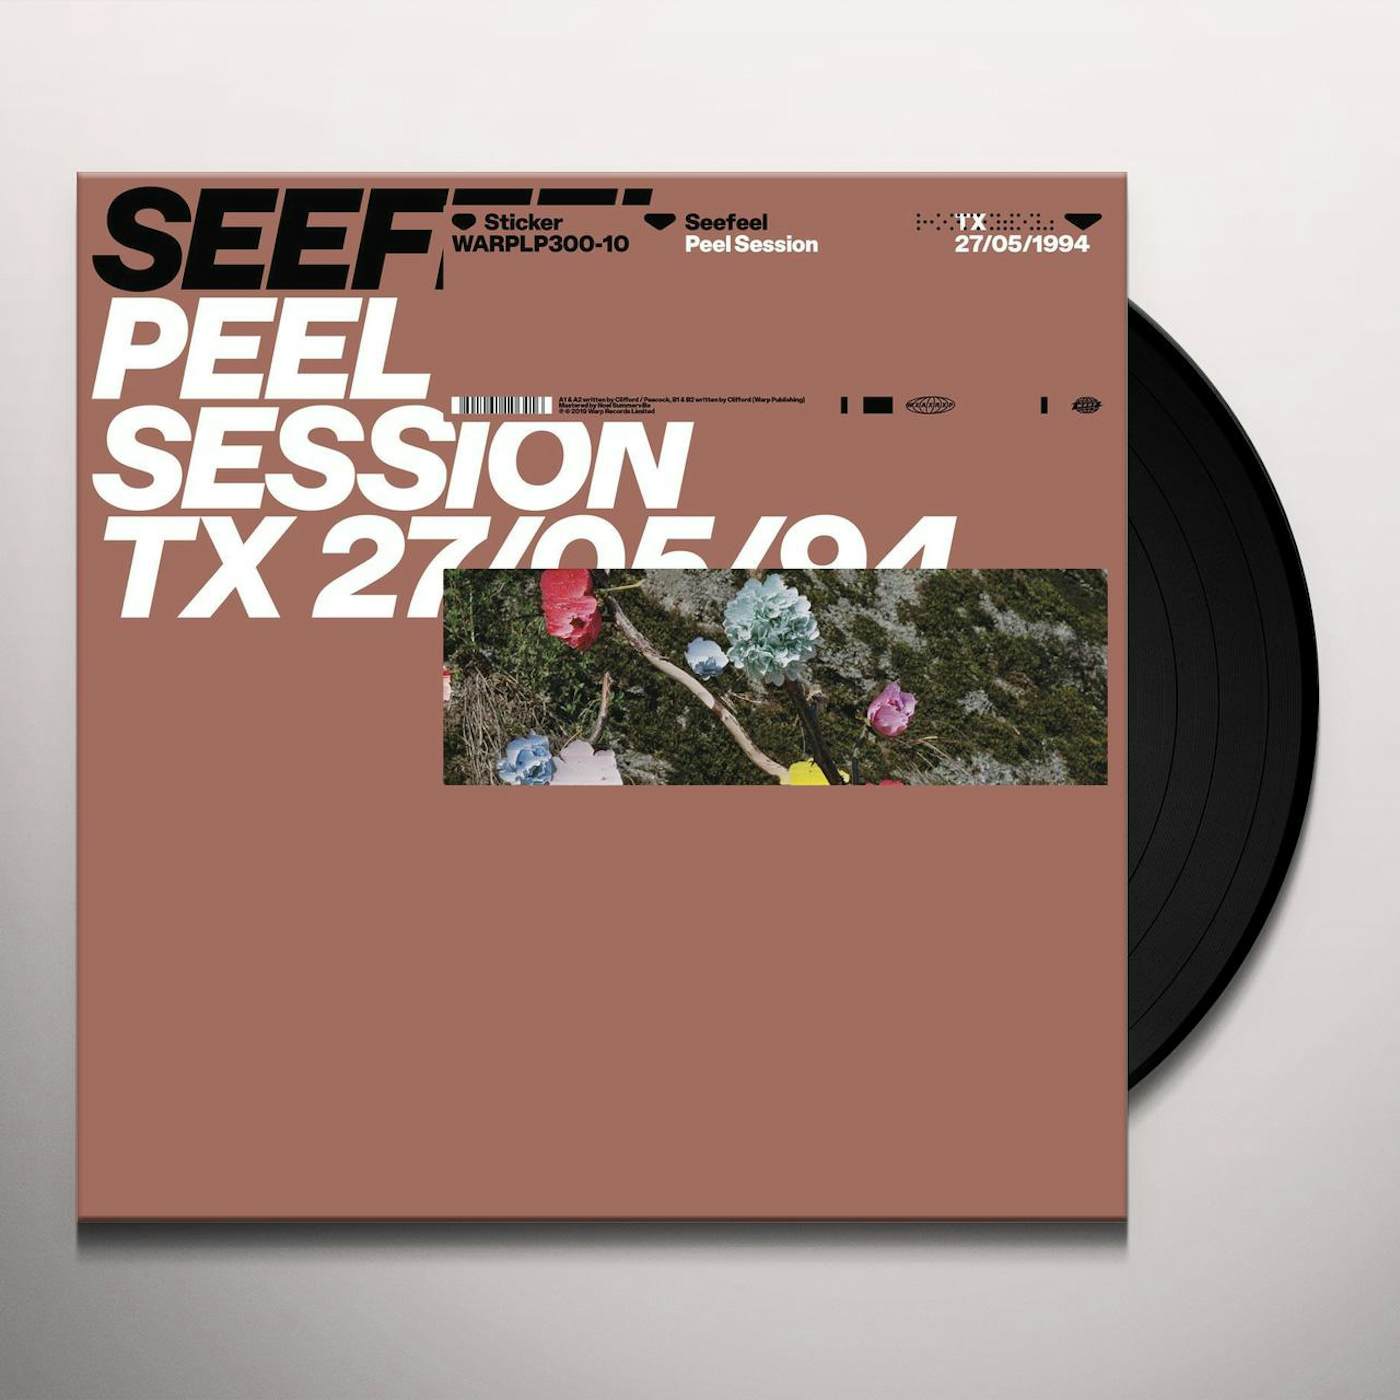 Seefeel Peel Session Vinyl Record